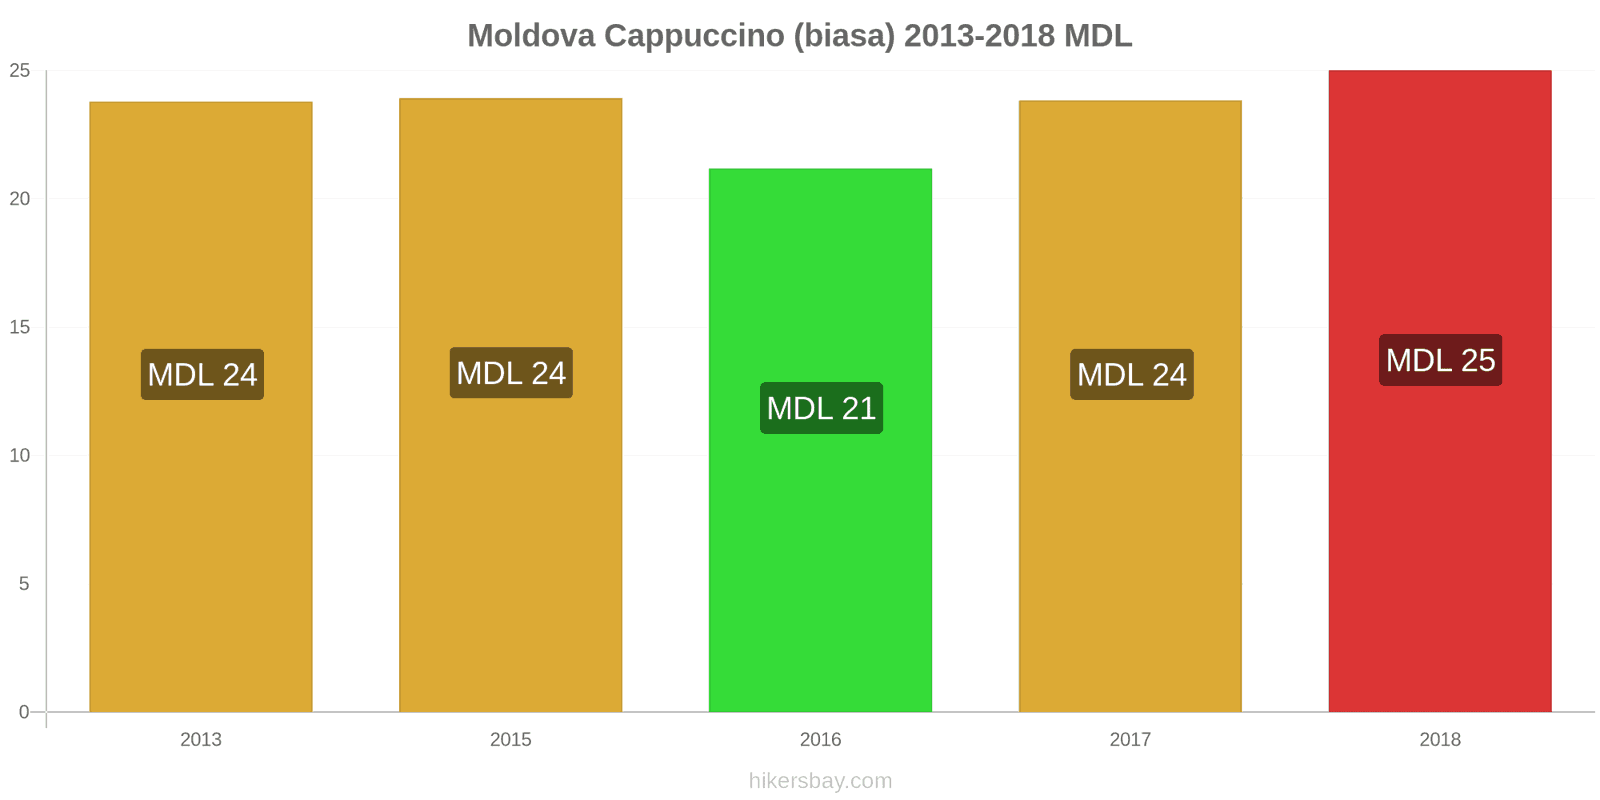 Moldova perubahan harga Cappuccino hikersbay.com